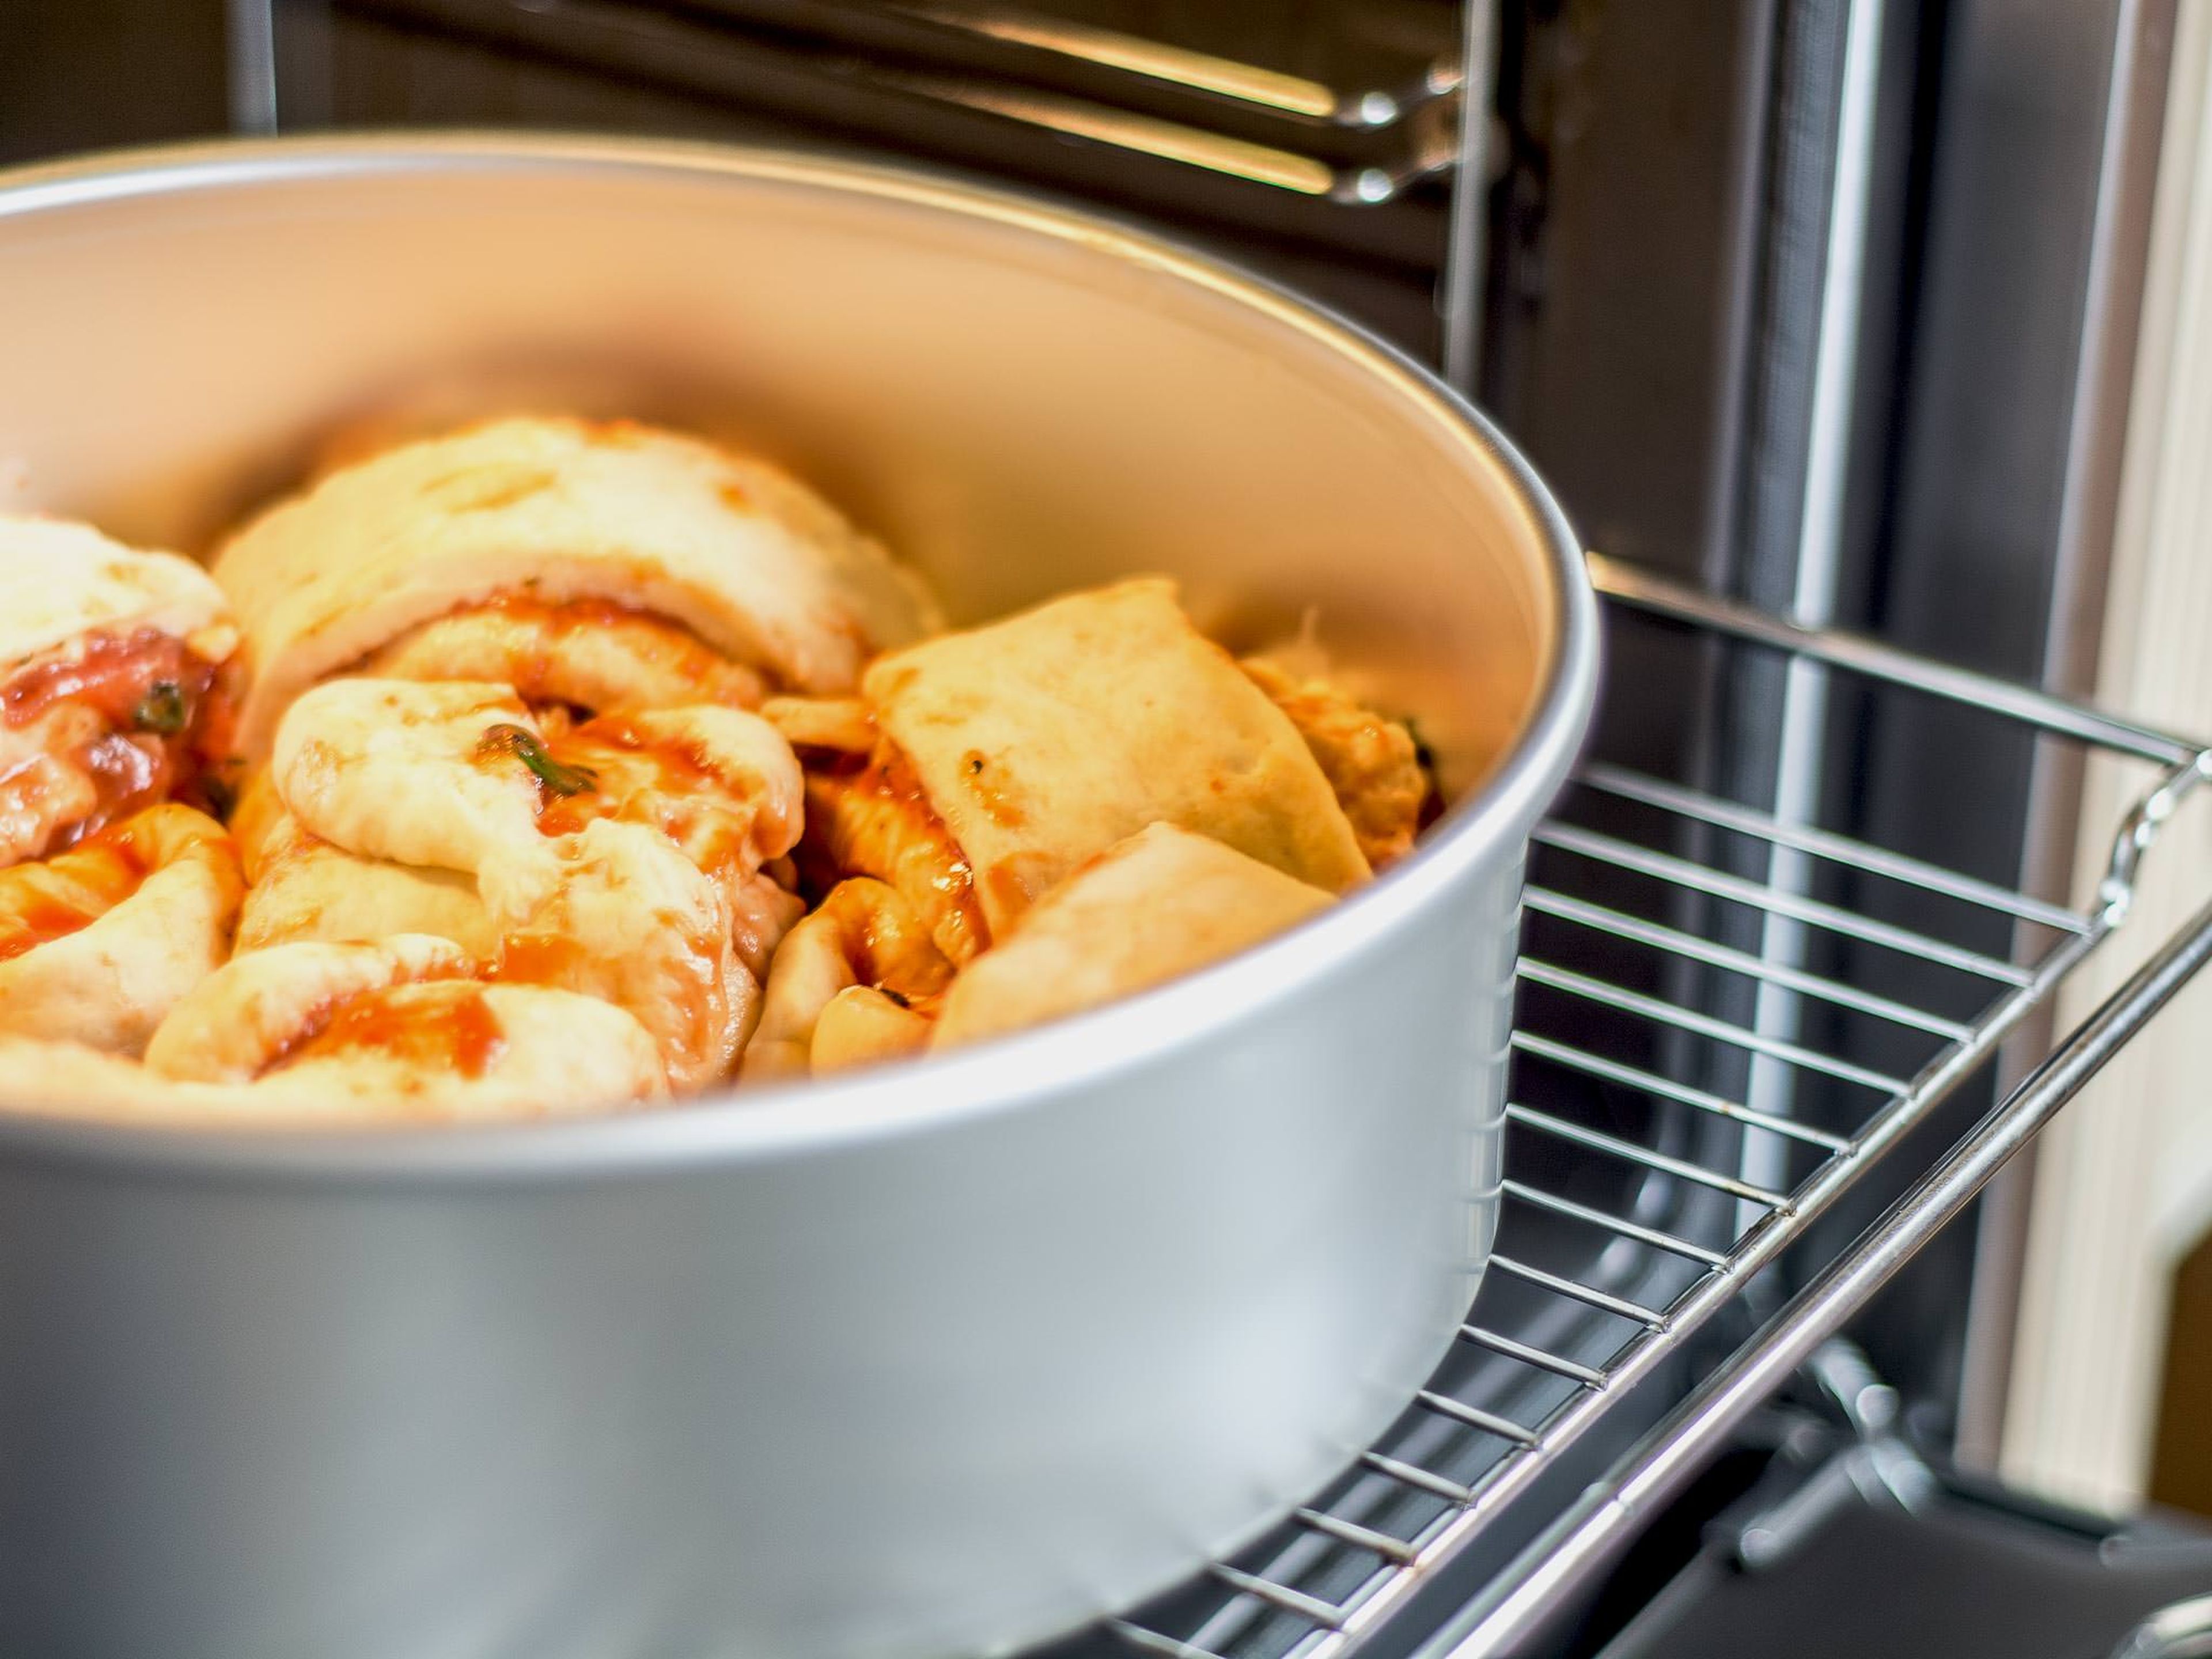 Anschließend die Stücke kranzförmig in eine gefettete Backform legen und im vorgeheizten Ofen bei 180°C ca. 35 – 40 Min. goldgelb backen. Auf Wunsch mit Dips reichen.